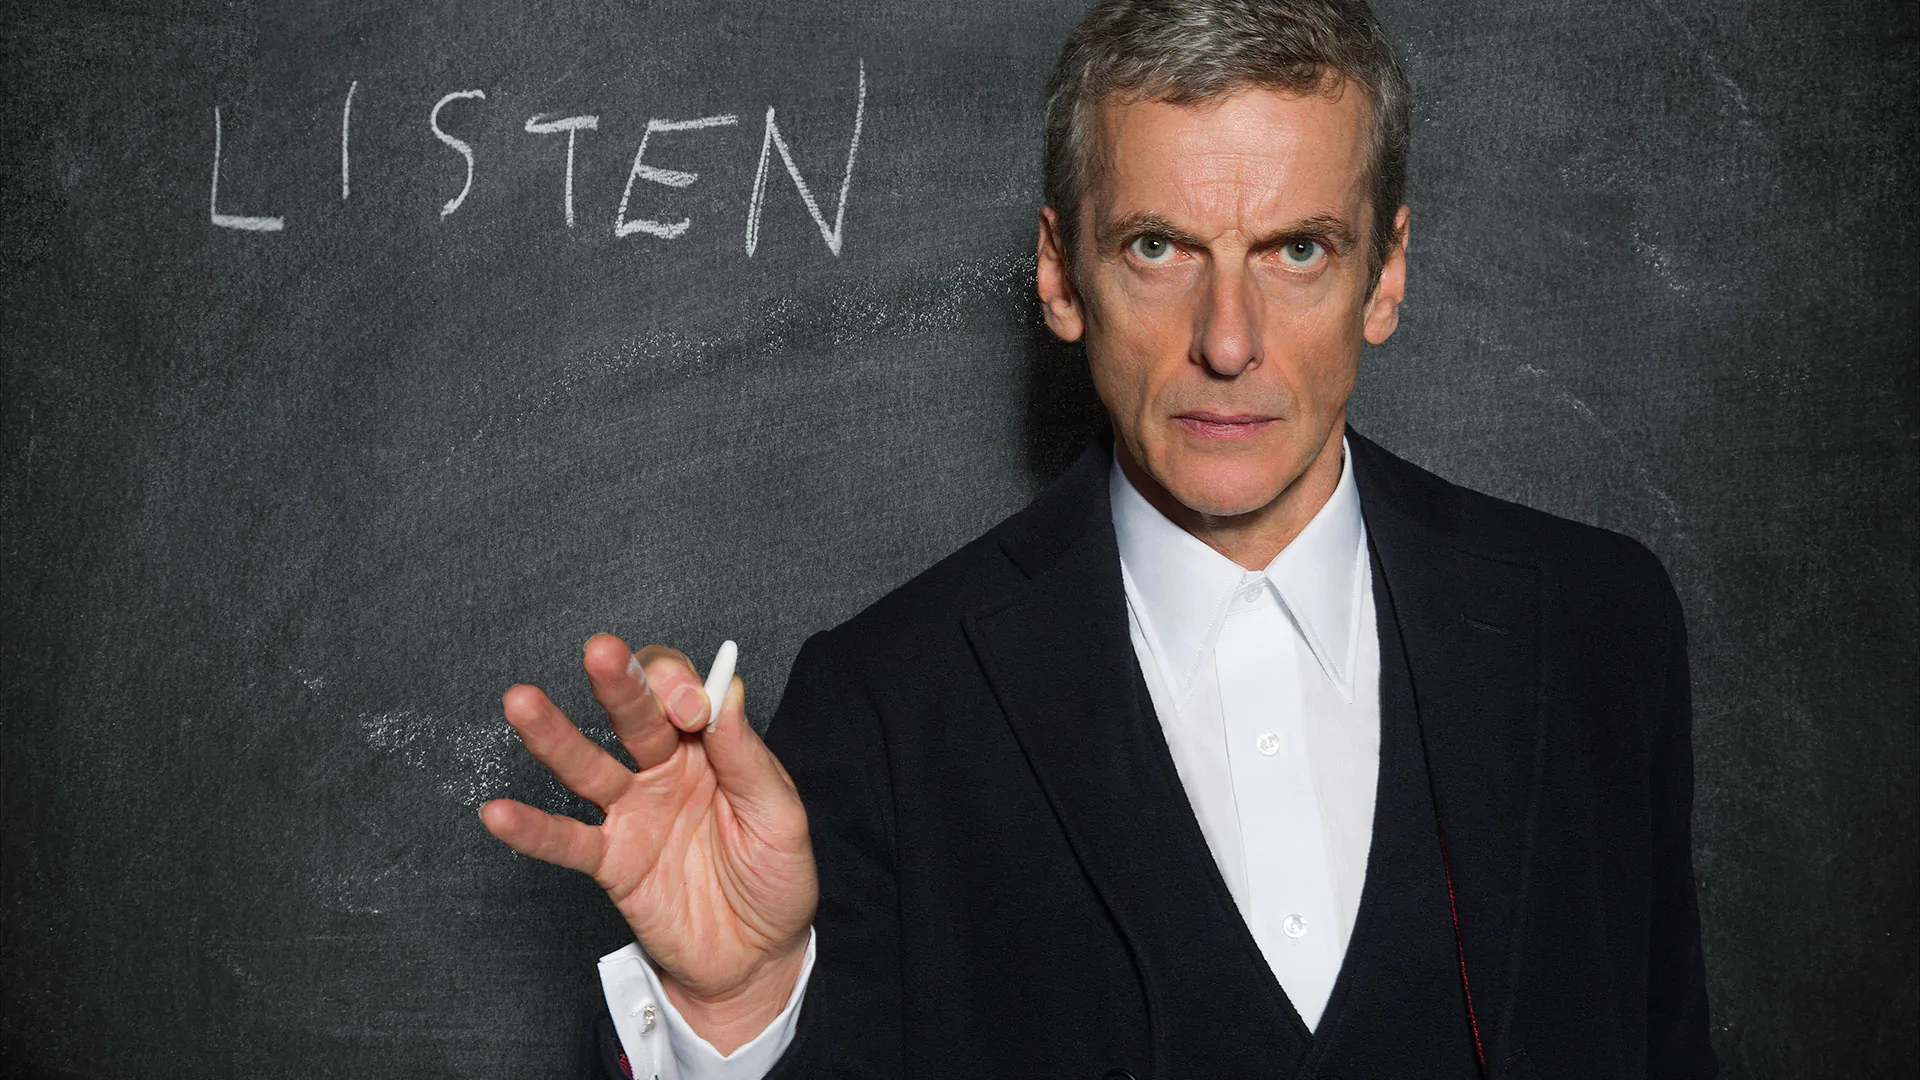 Doctor Who, Peter Capaldi: "Ecco perché ho deciso di lasciare la serie"